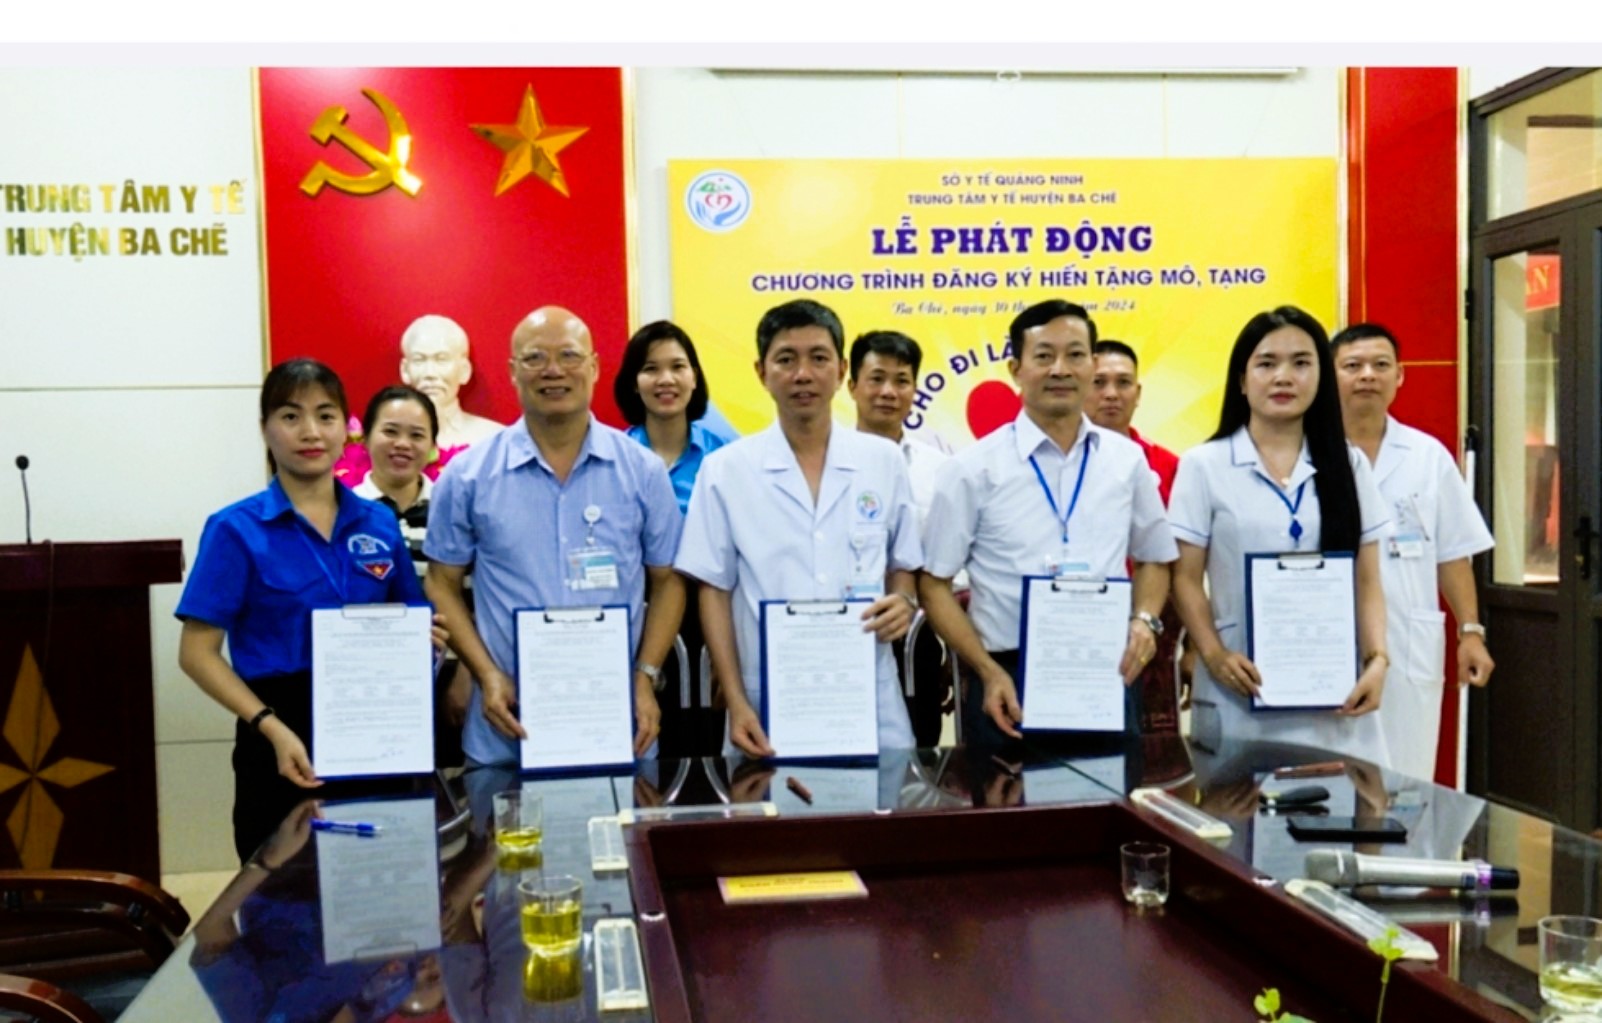  Cán bộ, nhân viên y tế Quảng Ninh đăng ký hiến mô, tạng cứu người- Ảnh 5.